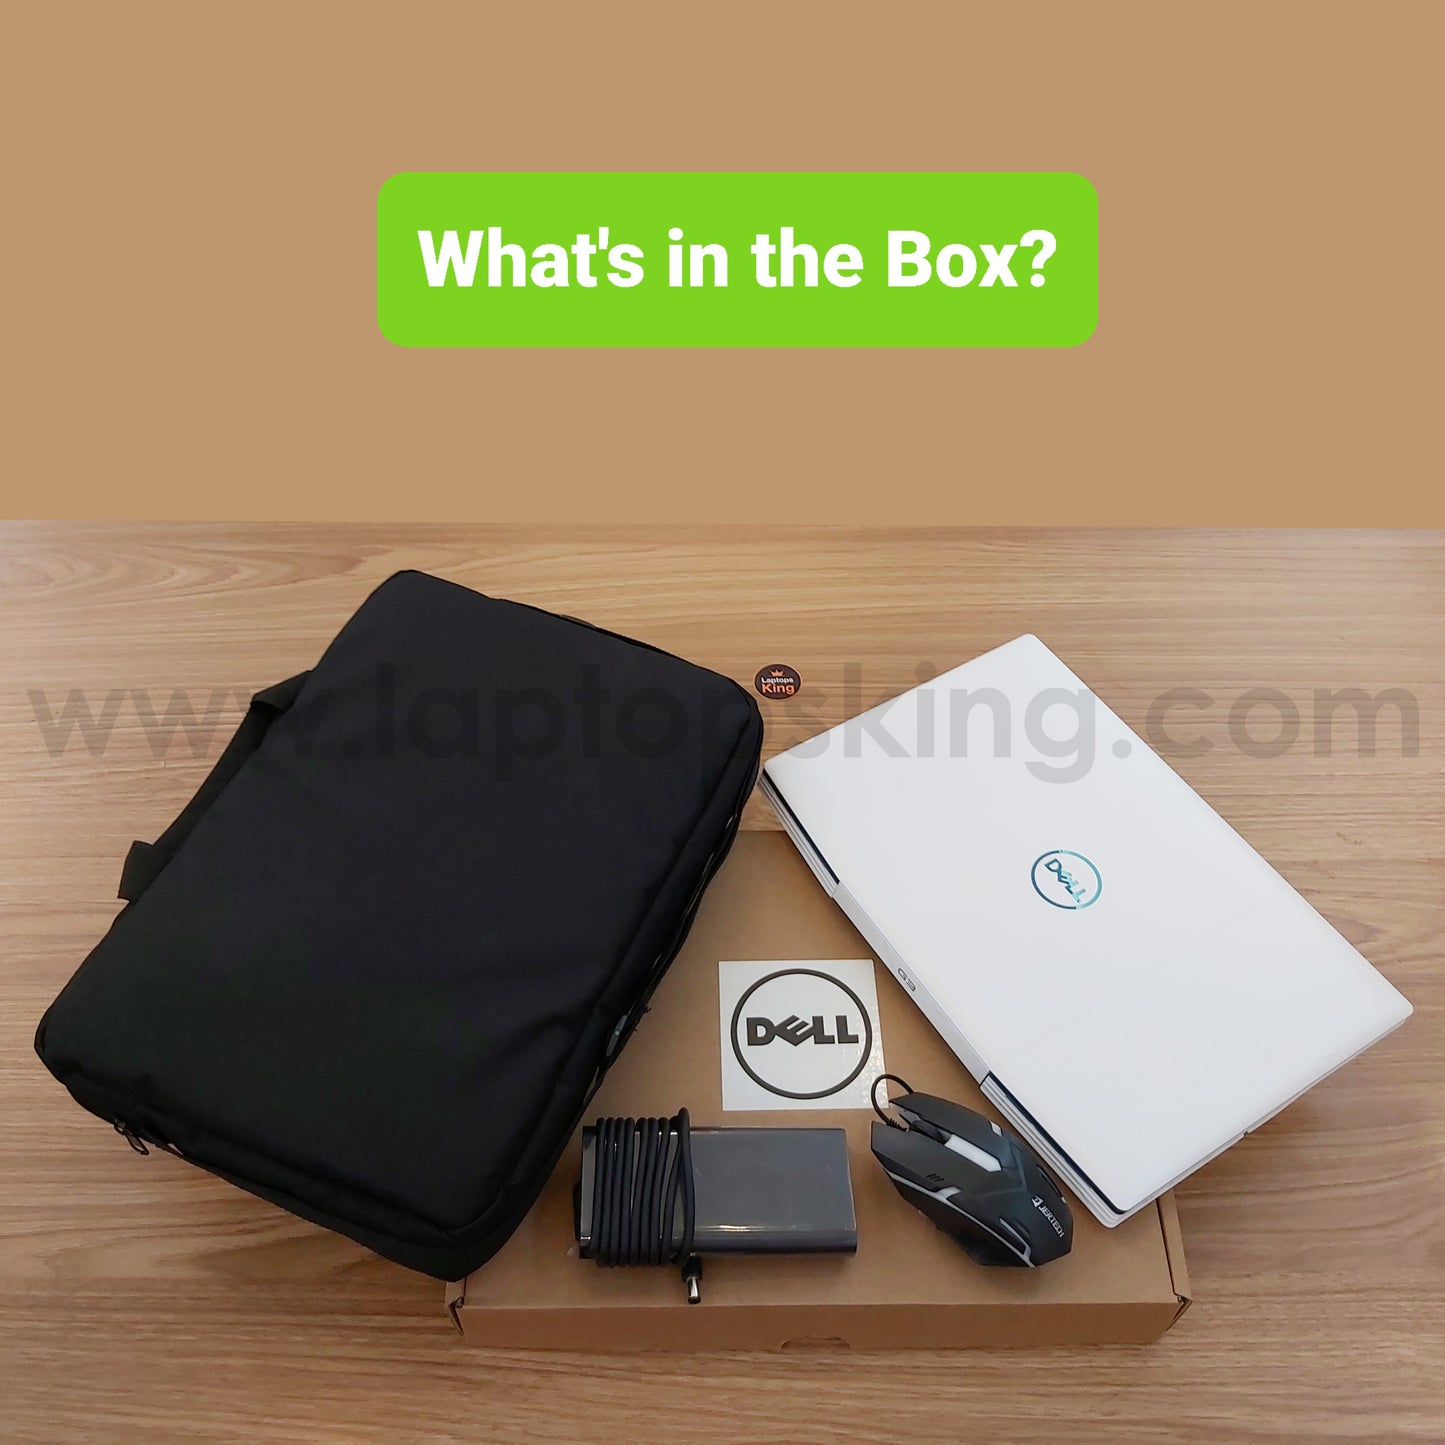 Dell G3 3500 White i7-10750H GTX 1660ti 144Hz Gaming Laptop (Open Box)